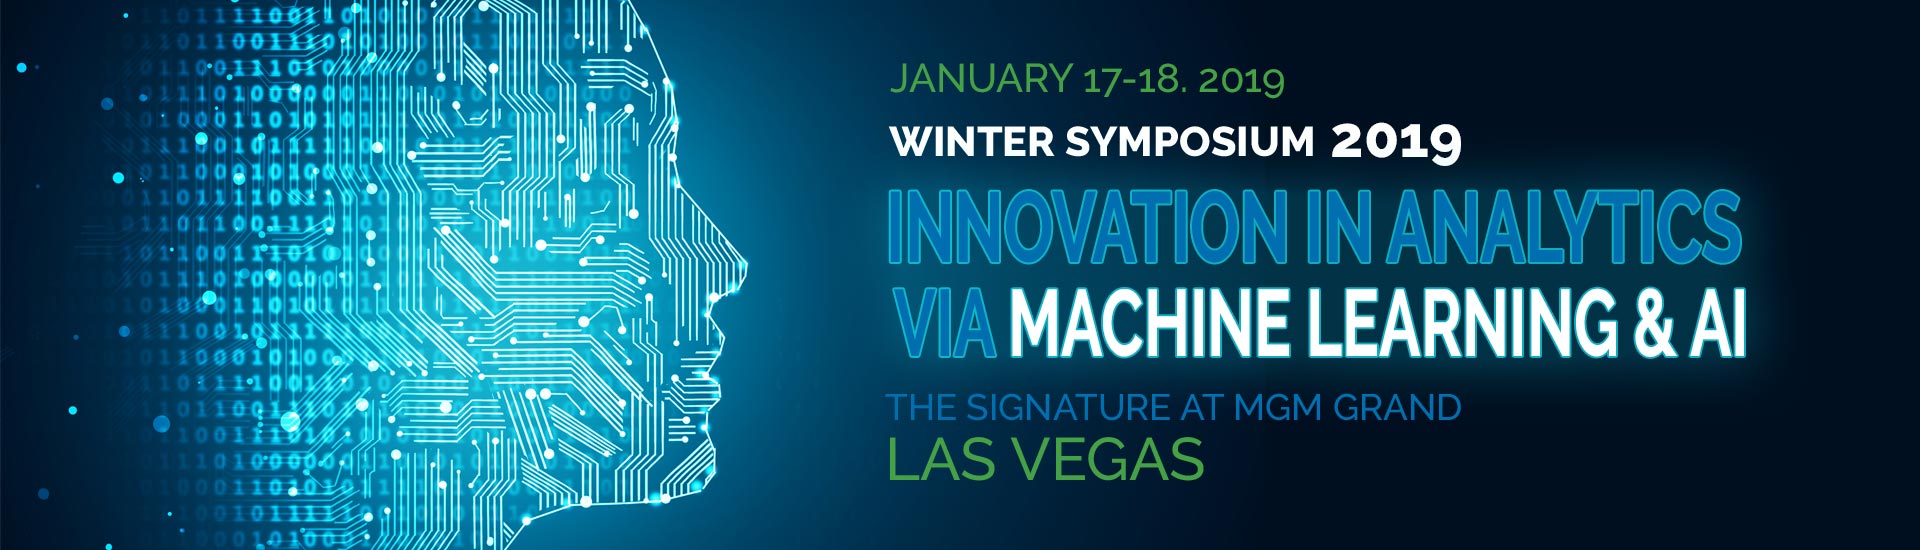 2019 Winter Symposium • Las Vegas, Nevada • January 17-18